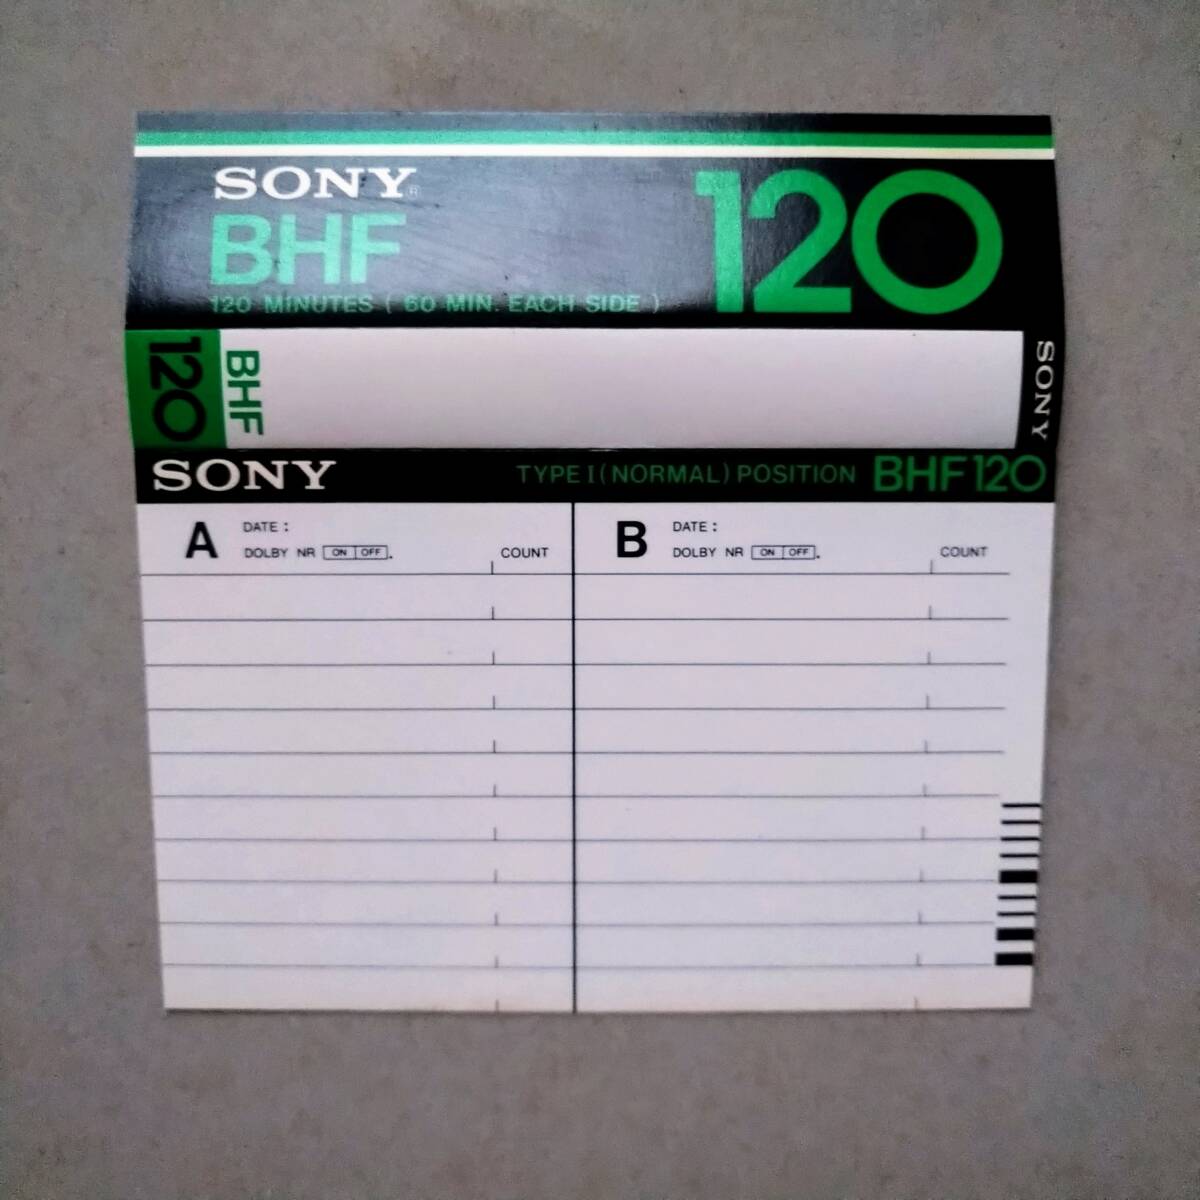 ★中古カセットテープ120★SONY-BHF ノーマルポジション ツメありインデックス無記入_インデックスカード逆側